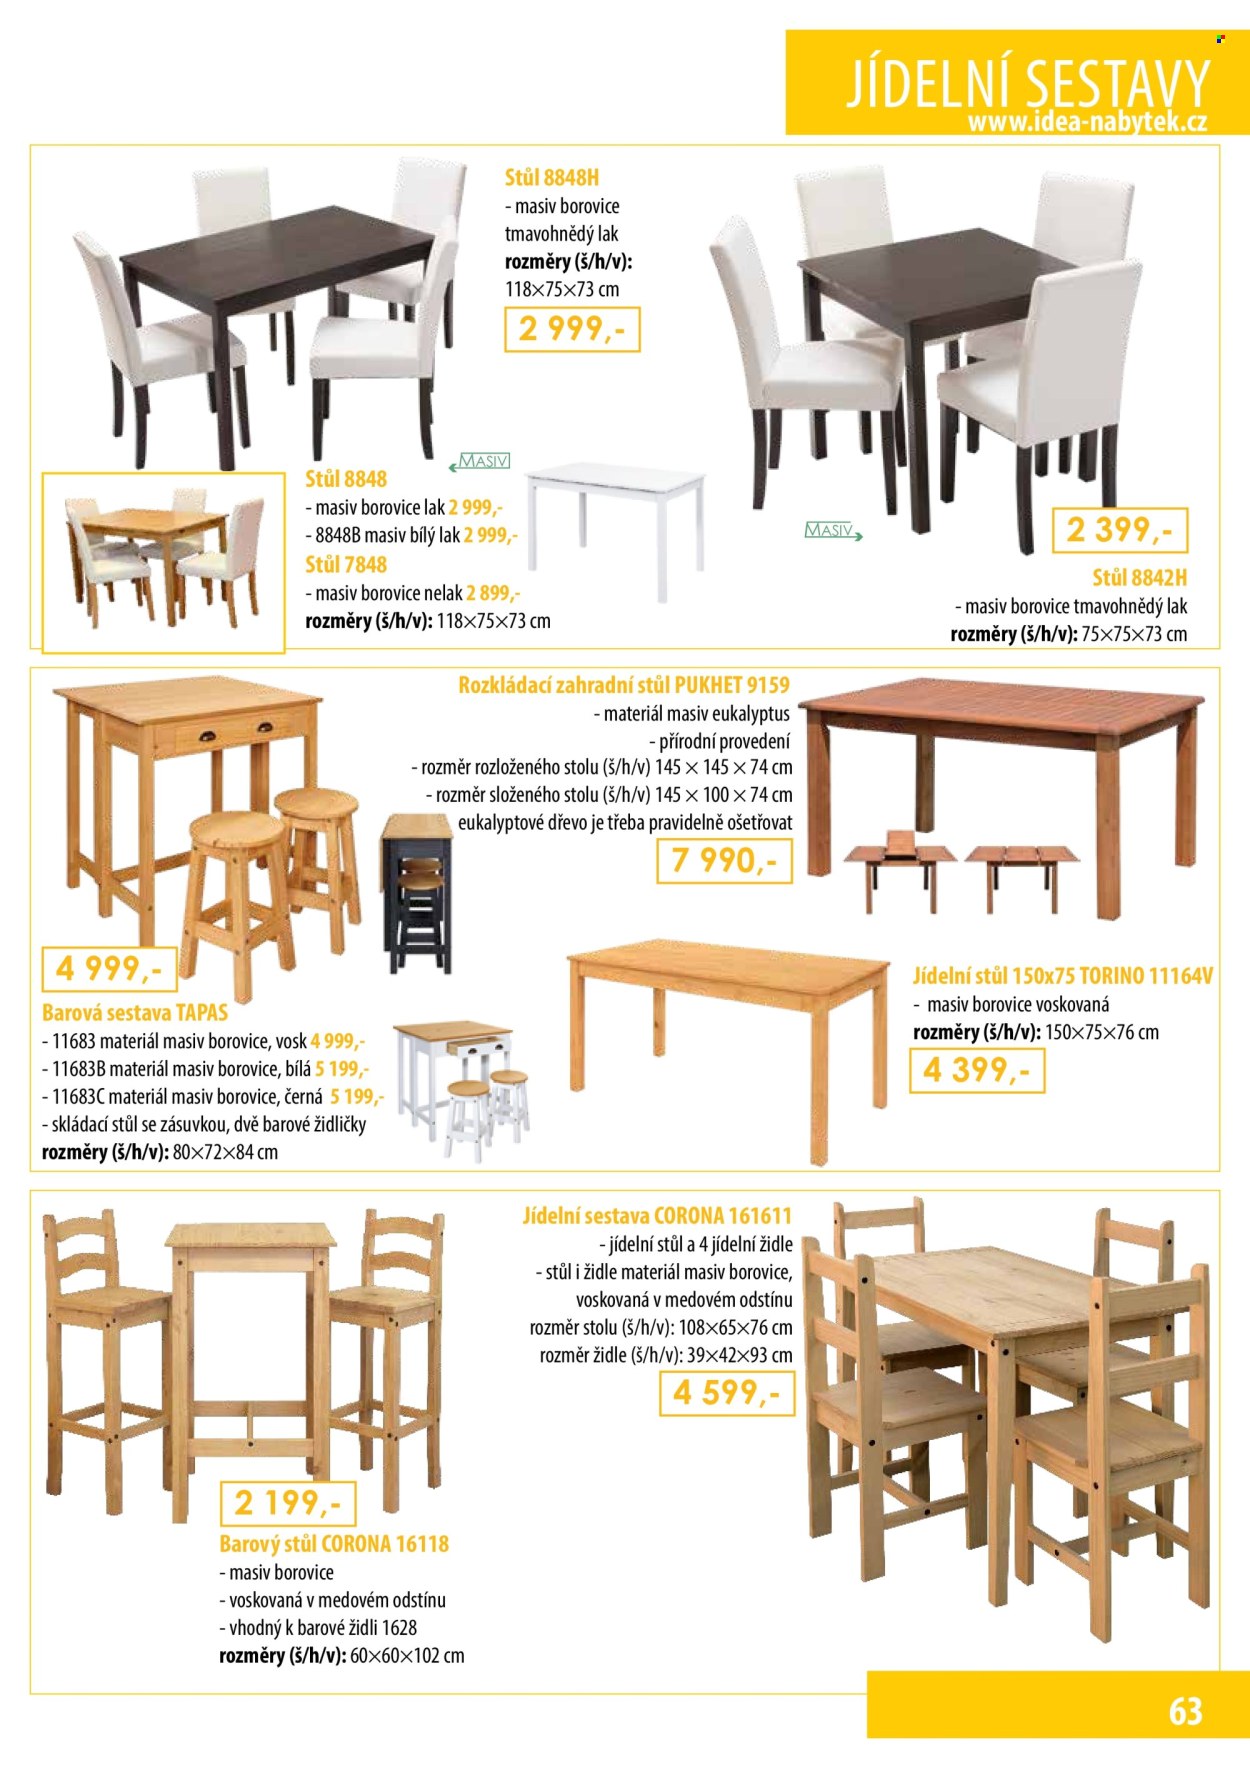 thumbnail - Leták IDEA nábytek - Produkty v akci - barový stůl, jídelní sestava, jídelní stůl, jídelní židle, židle, skládací stolek, zahradní stůl. Strana 63.